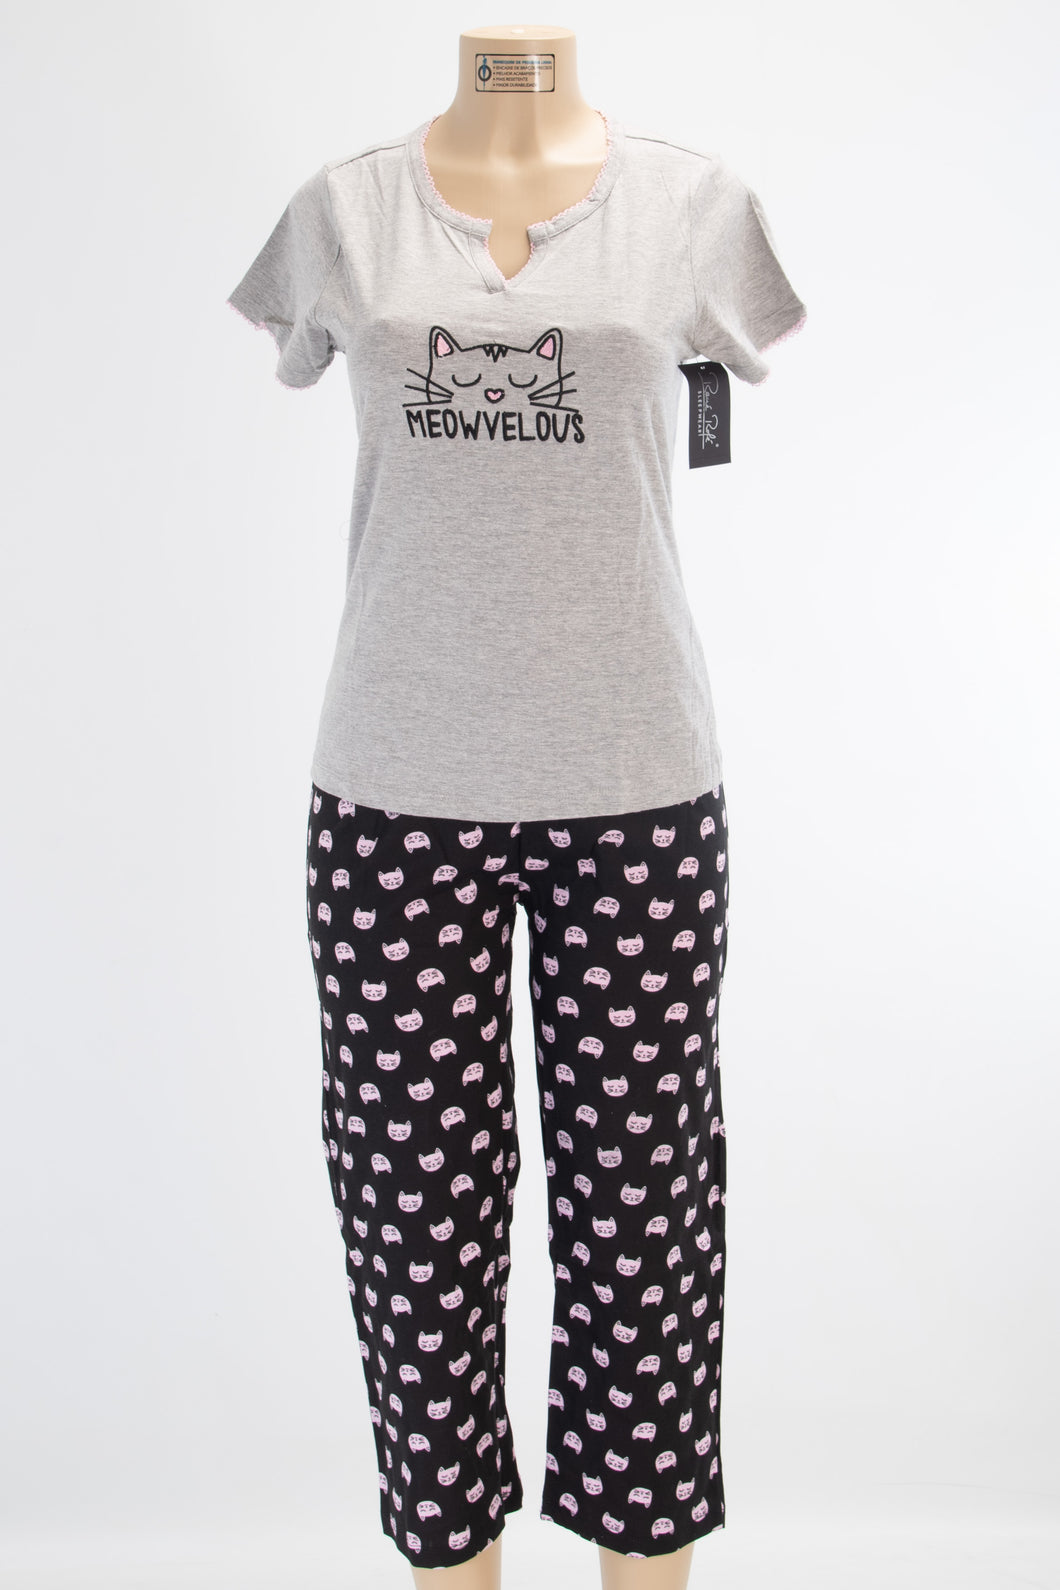 2 Piece “Meowvelous” Pajama Set